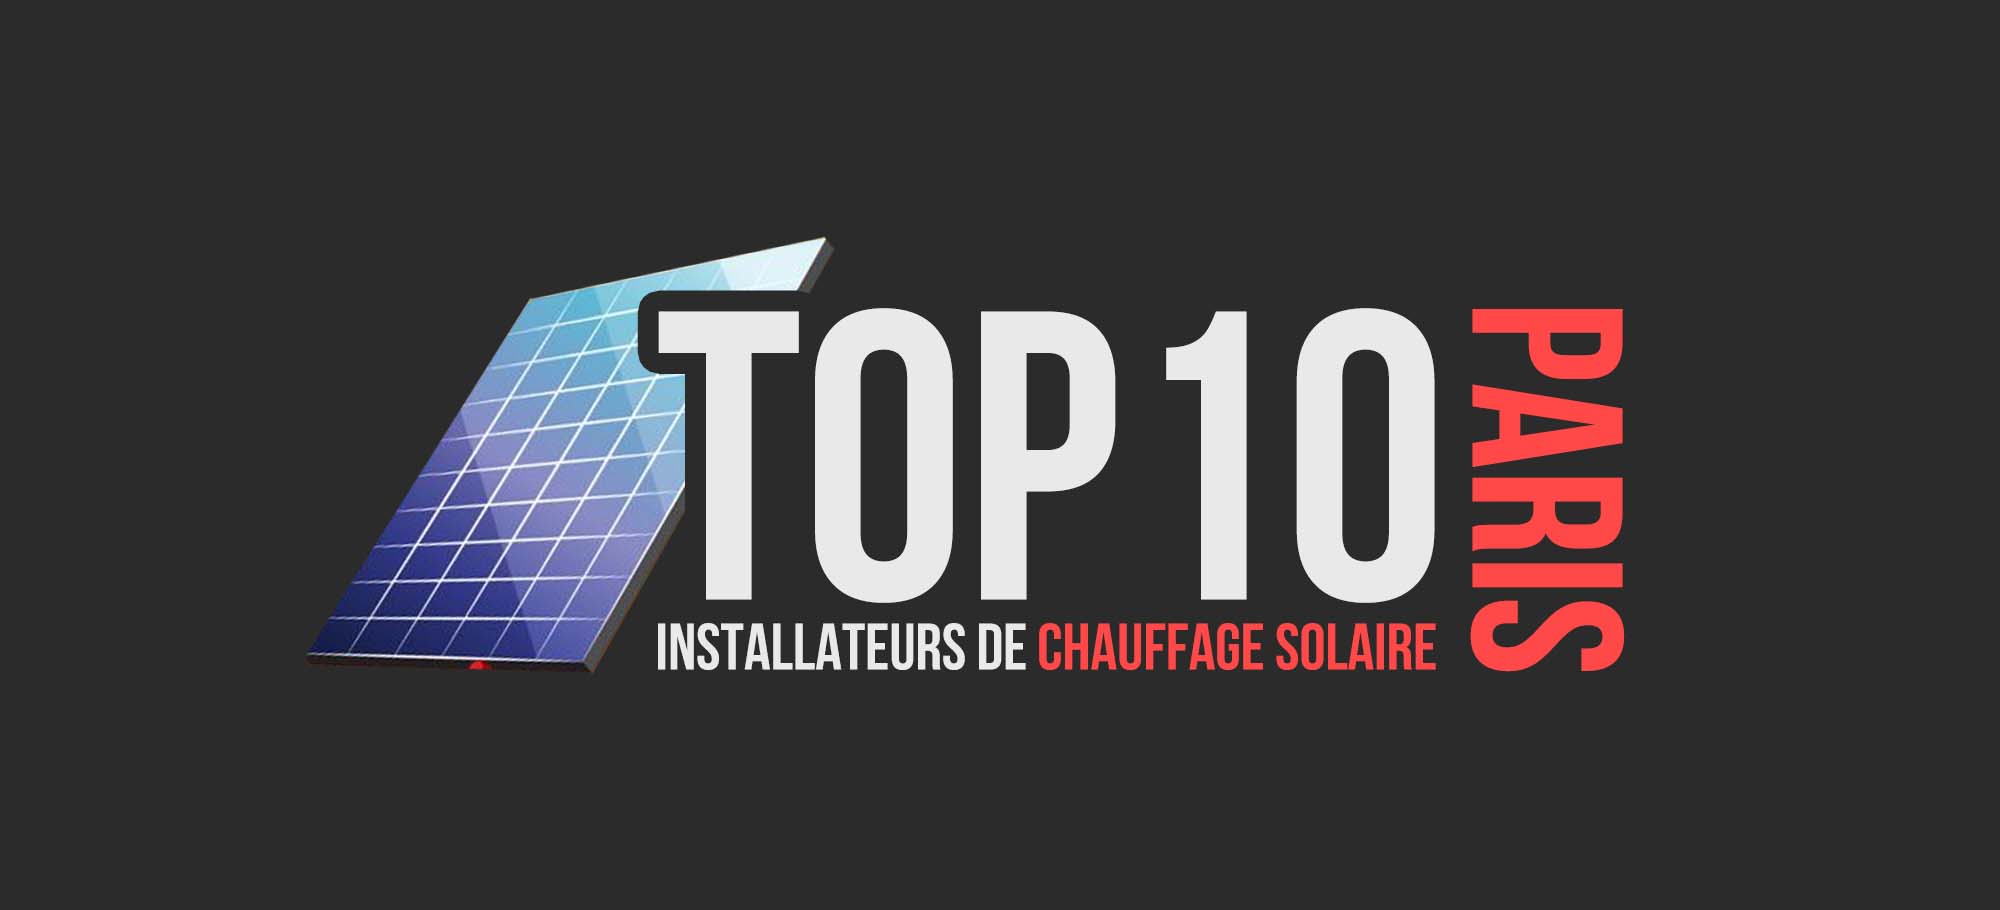 You are currently viewing Top 10 des installateurs de chauffage solaire à Paris